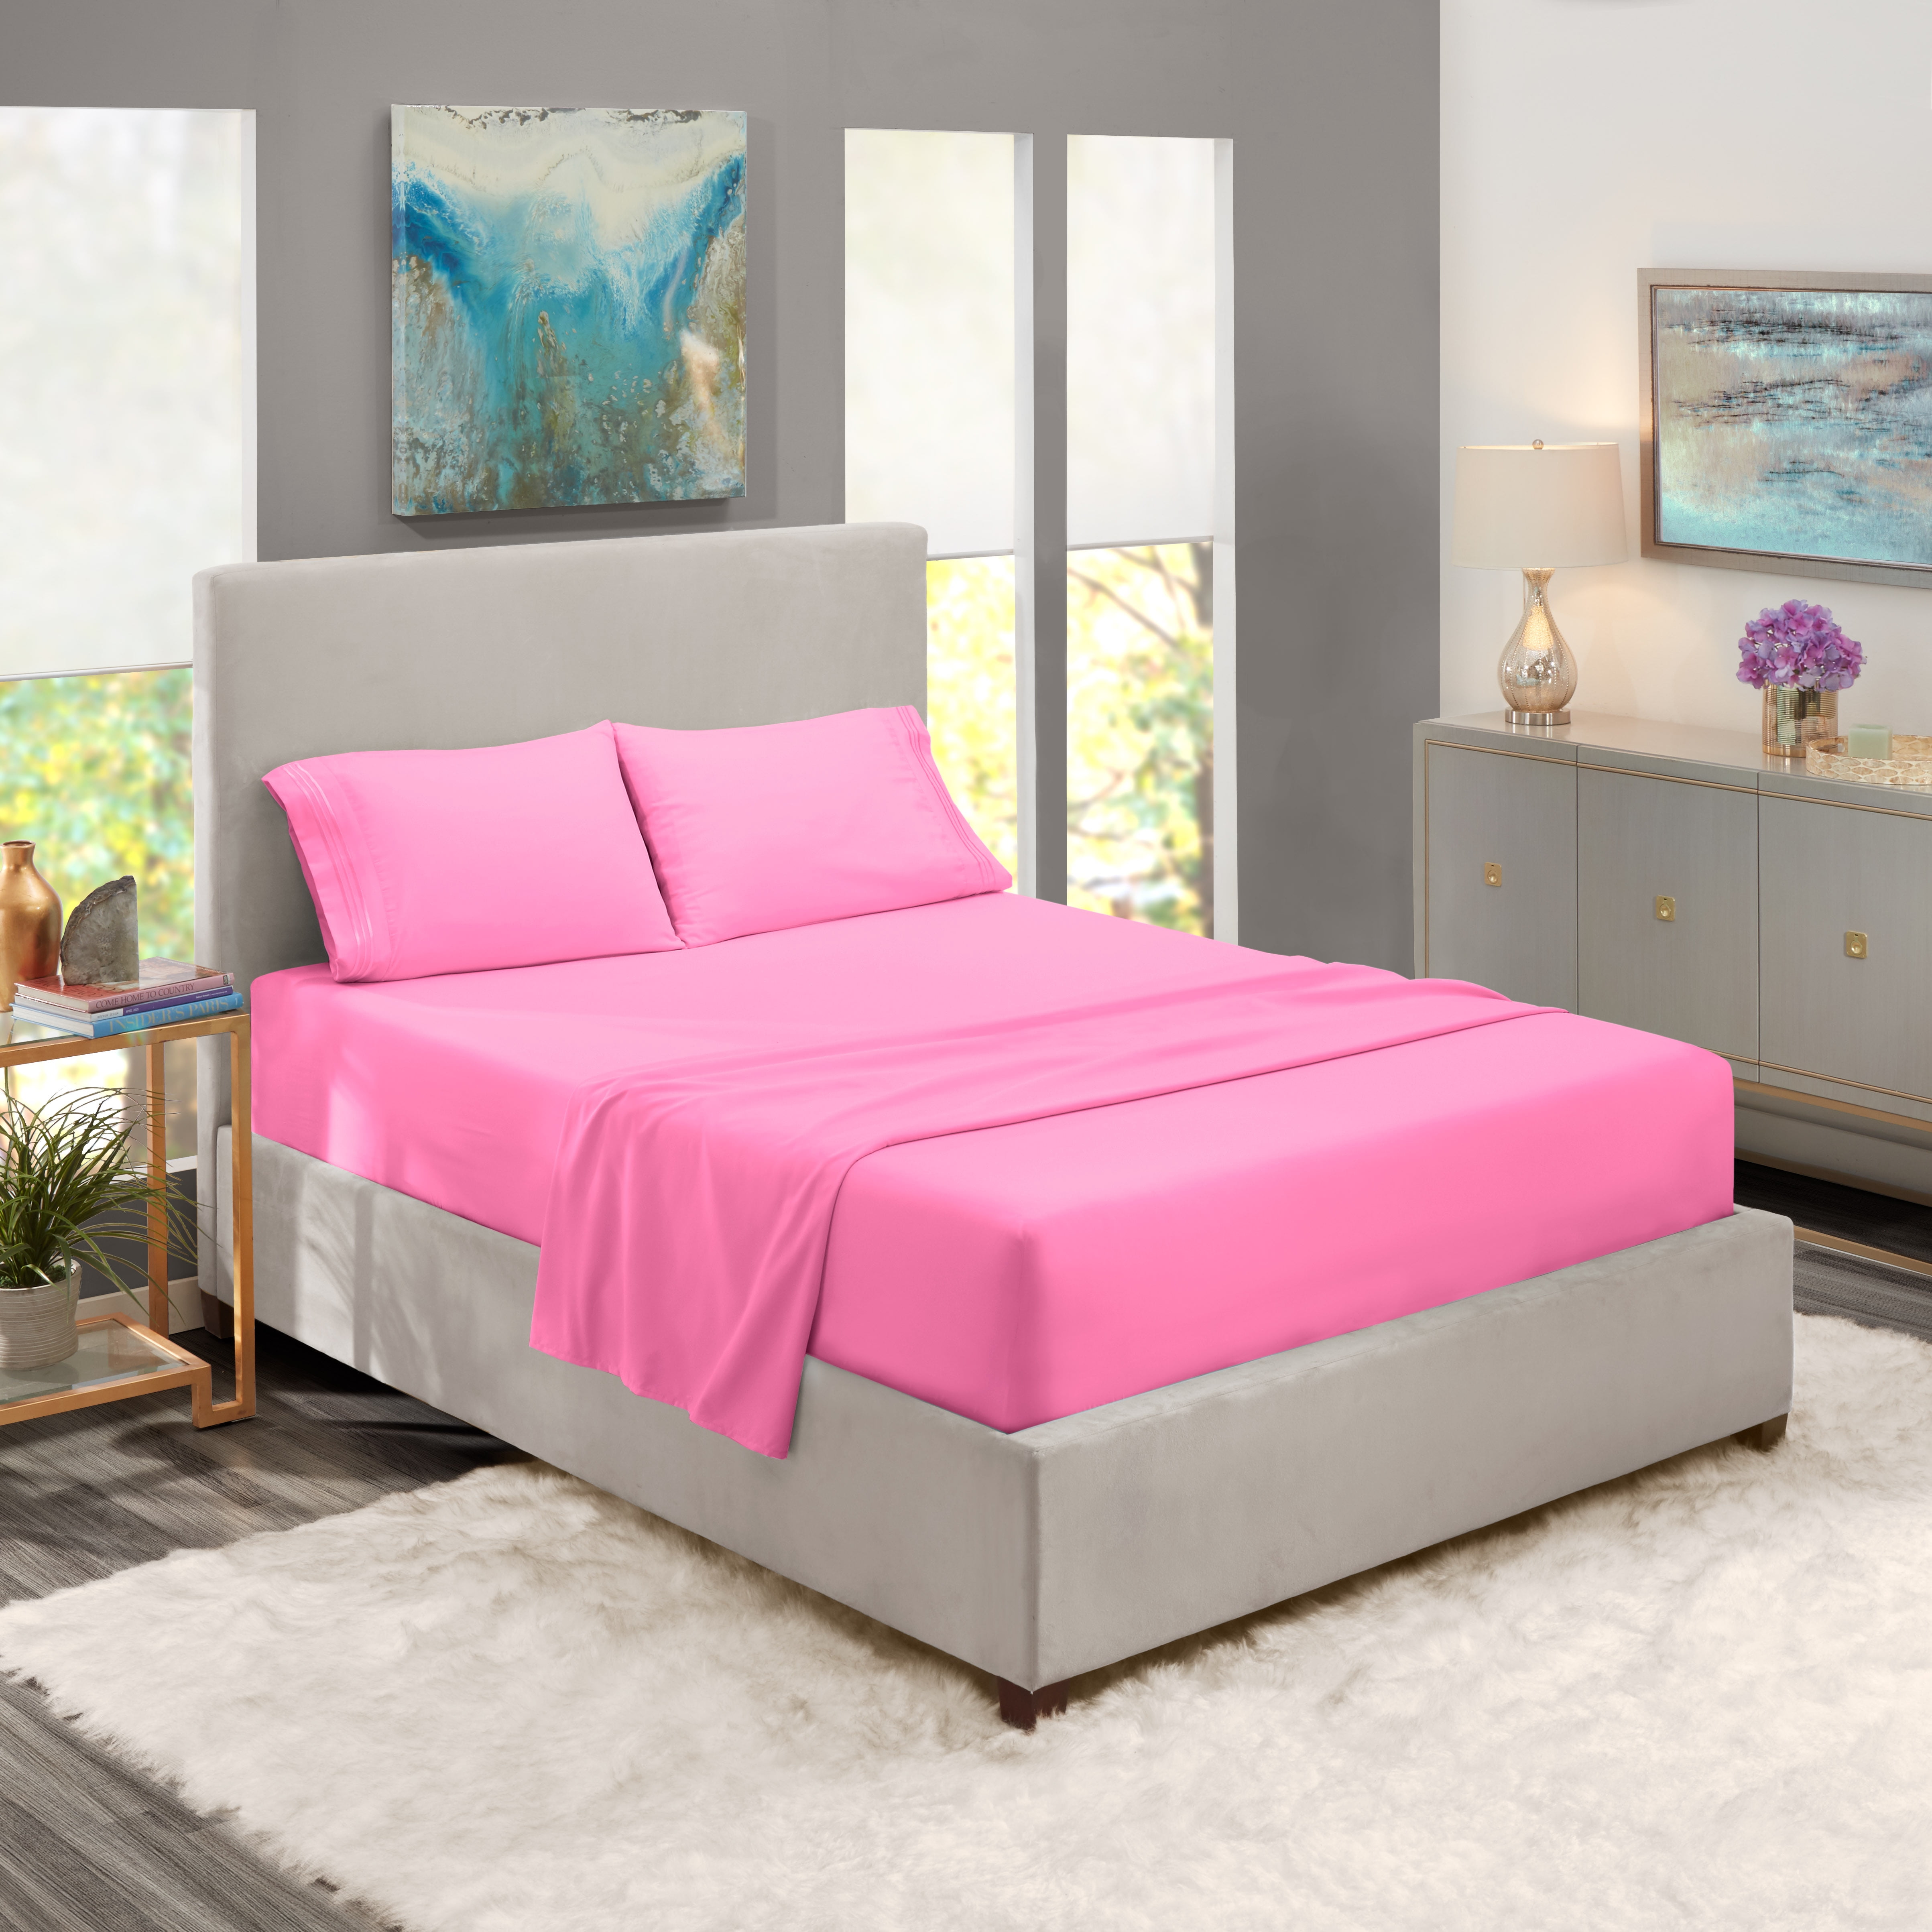 Split King Size Bed Sheets Set Light, Pink King Size Bed Sheets